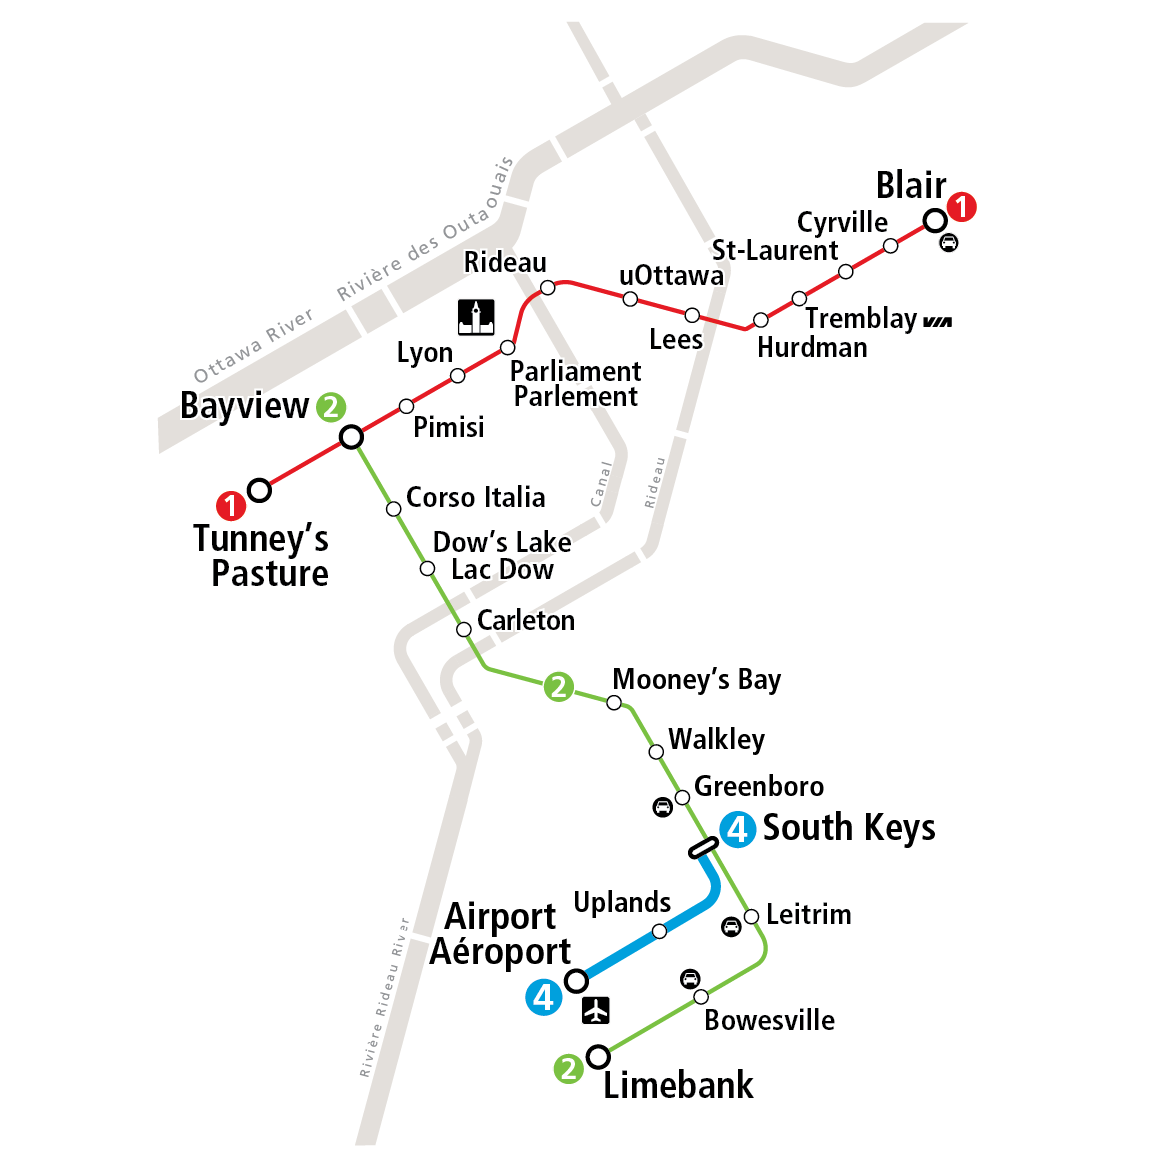 Représentation visuelle de l'itinéraire de la ligne 4, illustrant le trajet entre Aéroport et la station South Keys